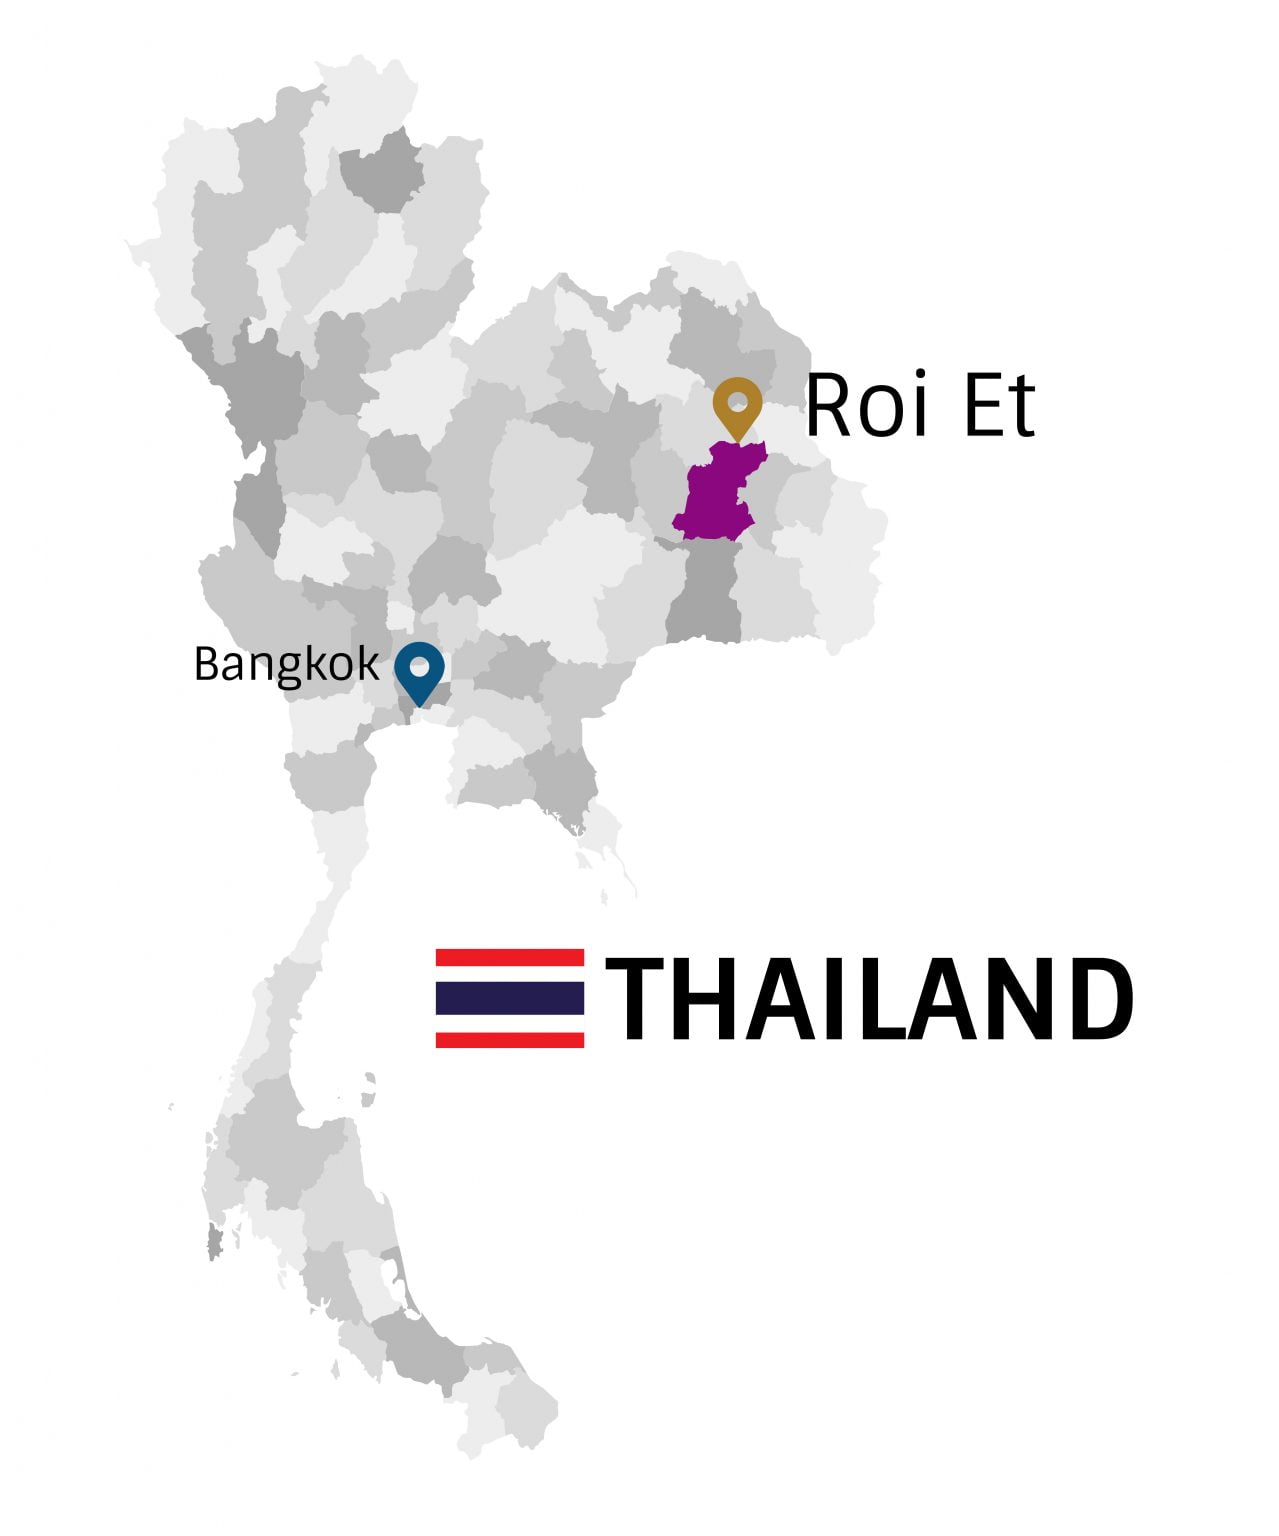 Roi-Et-Thailand-crop-1279x1536